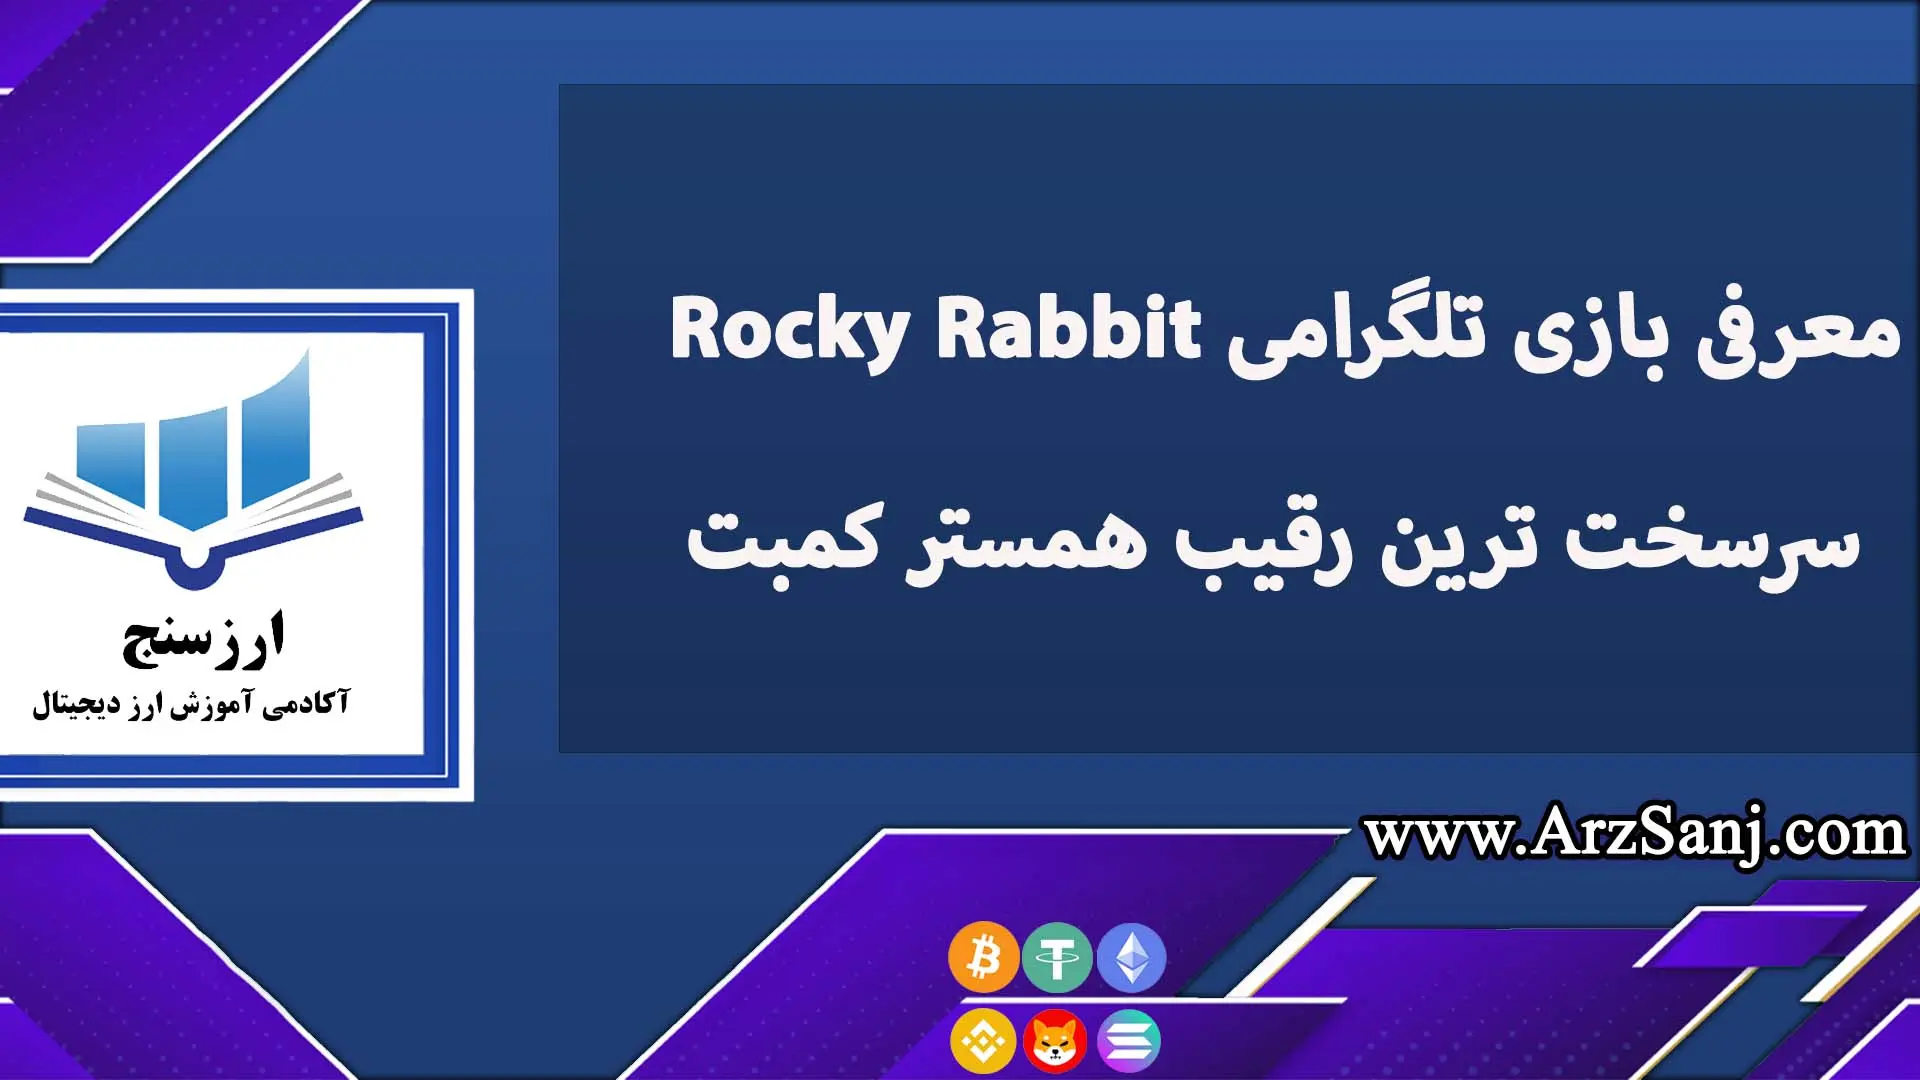 معرفی بازی تلگرامی Rocky Rabbit سرسخت ترین رقیب همستر کمبت